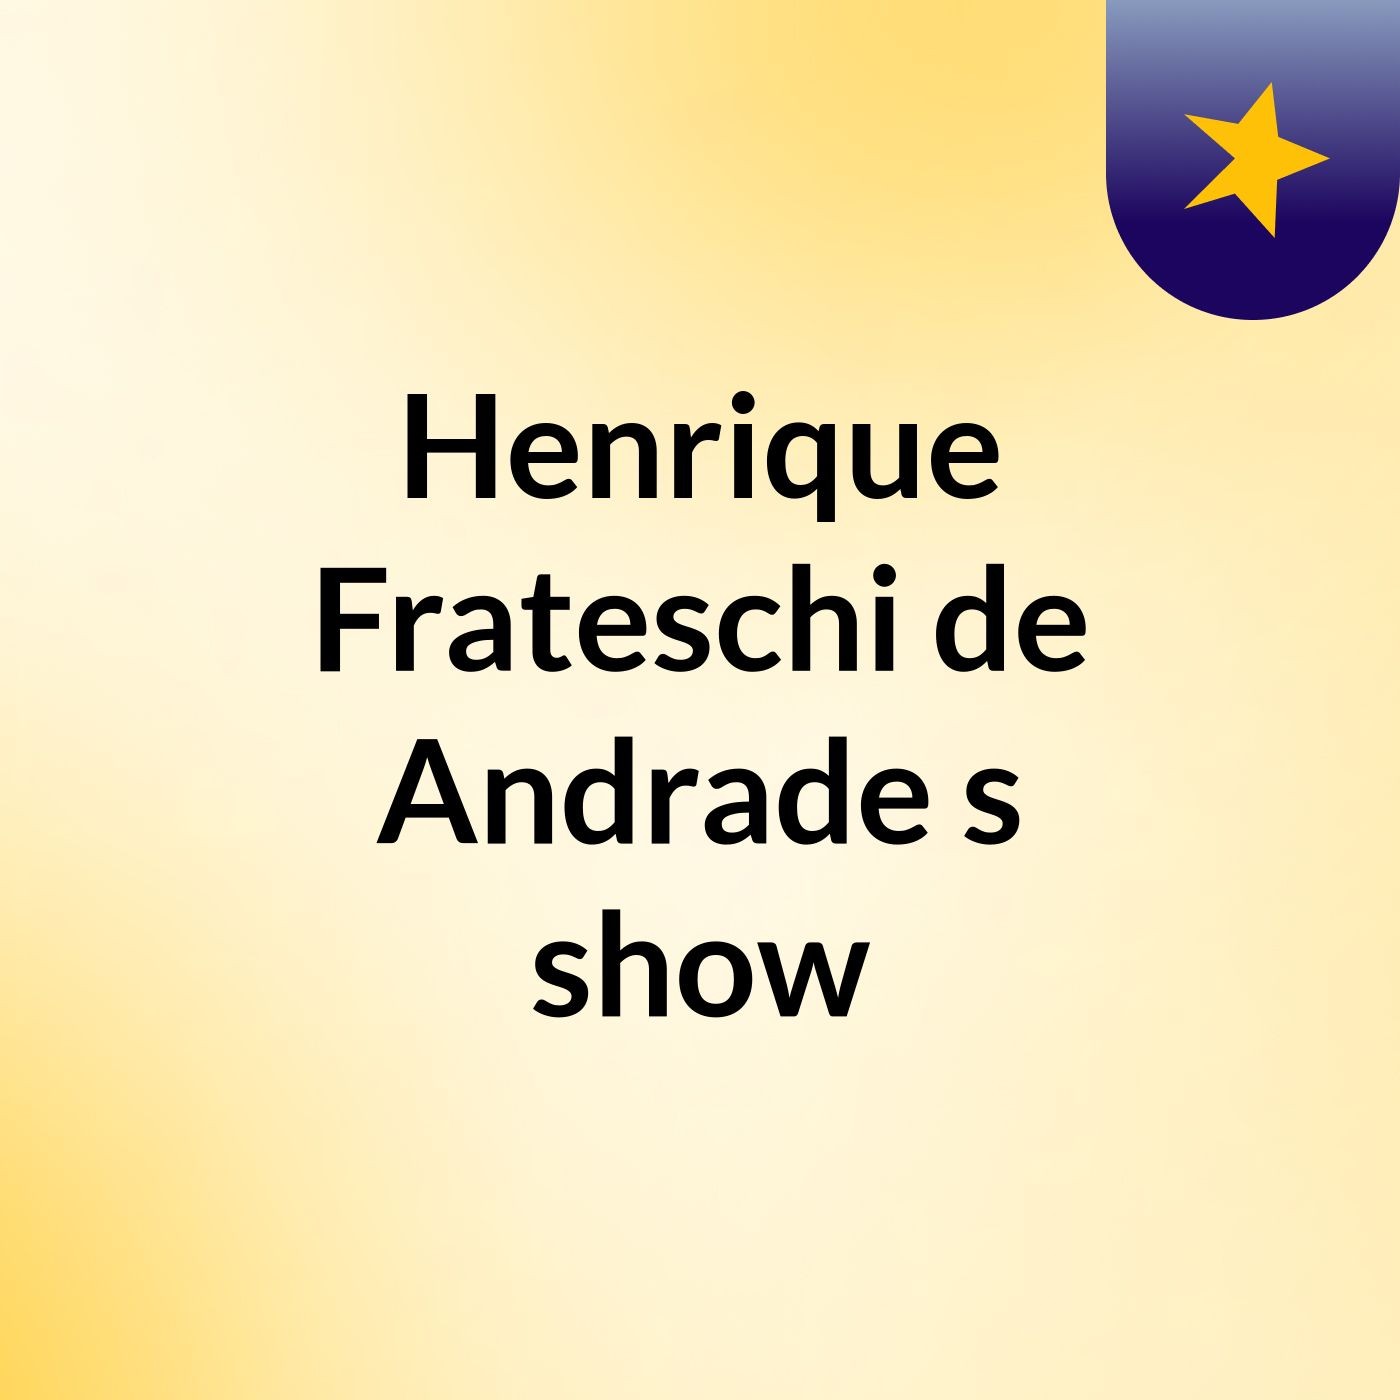 Henrique Frateschi de Andrade's show